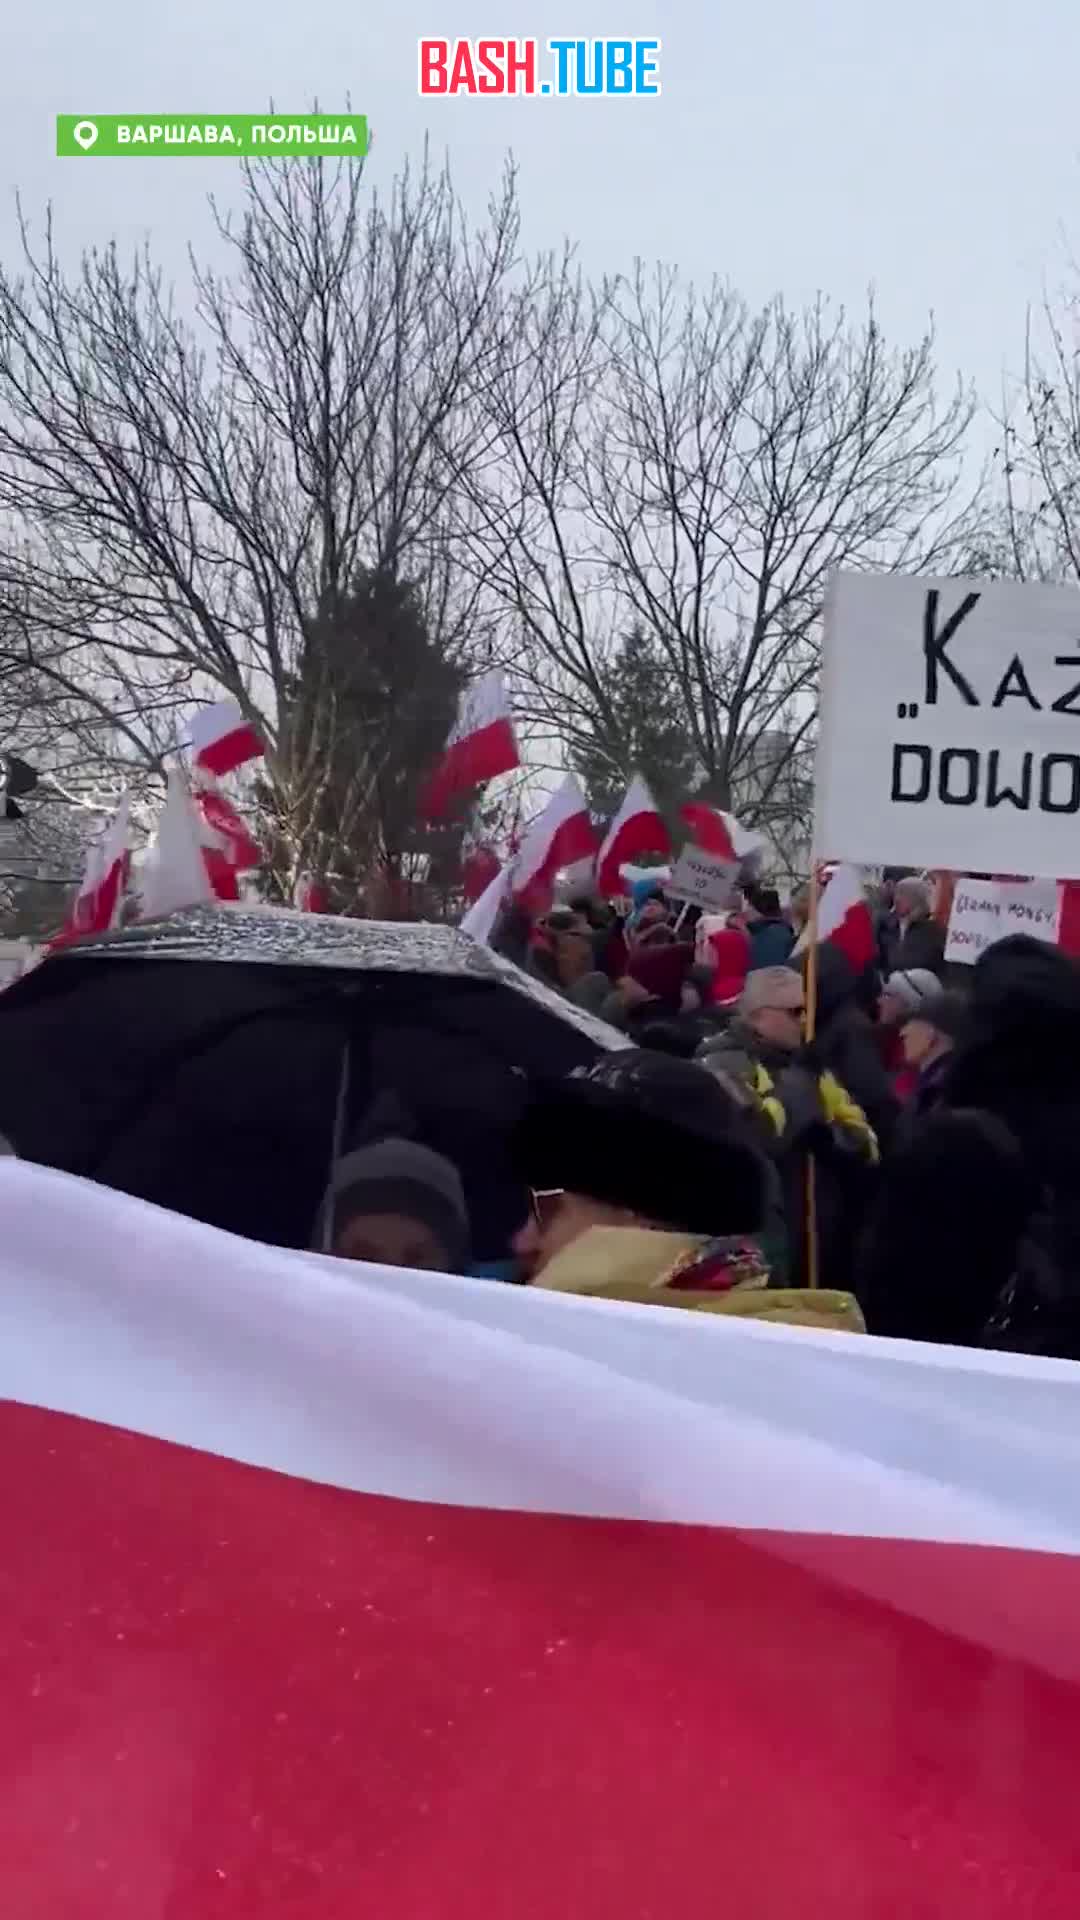  Антиправительственная акция протеста проходит в Варшаве